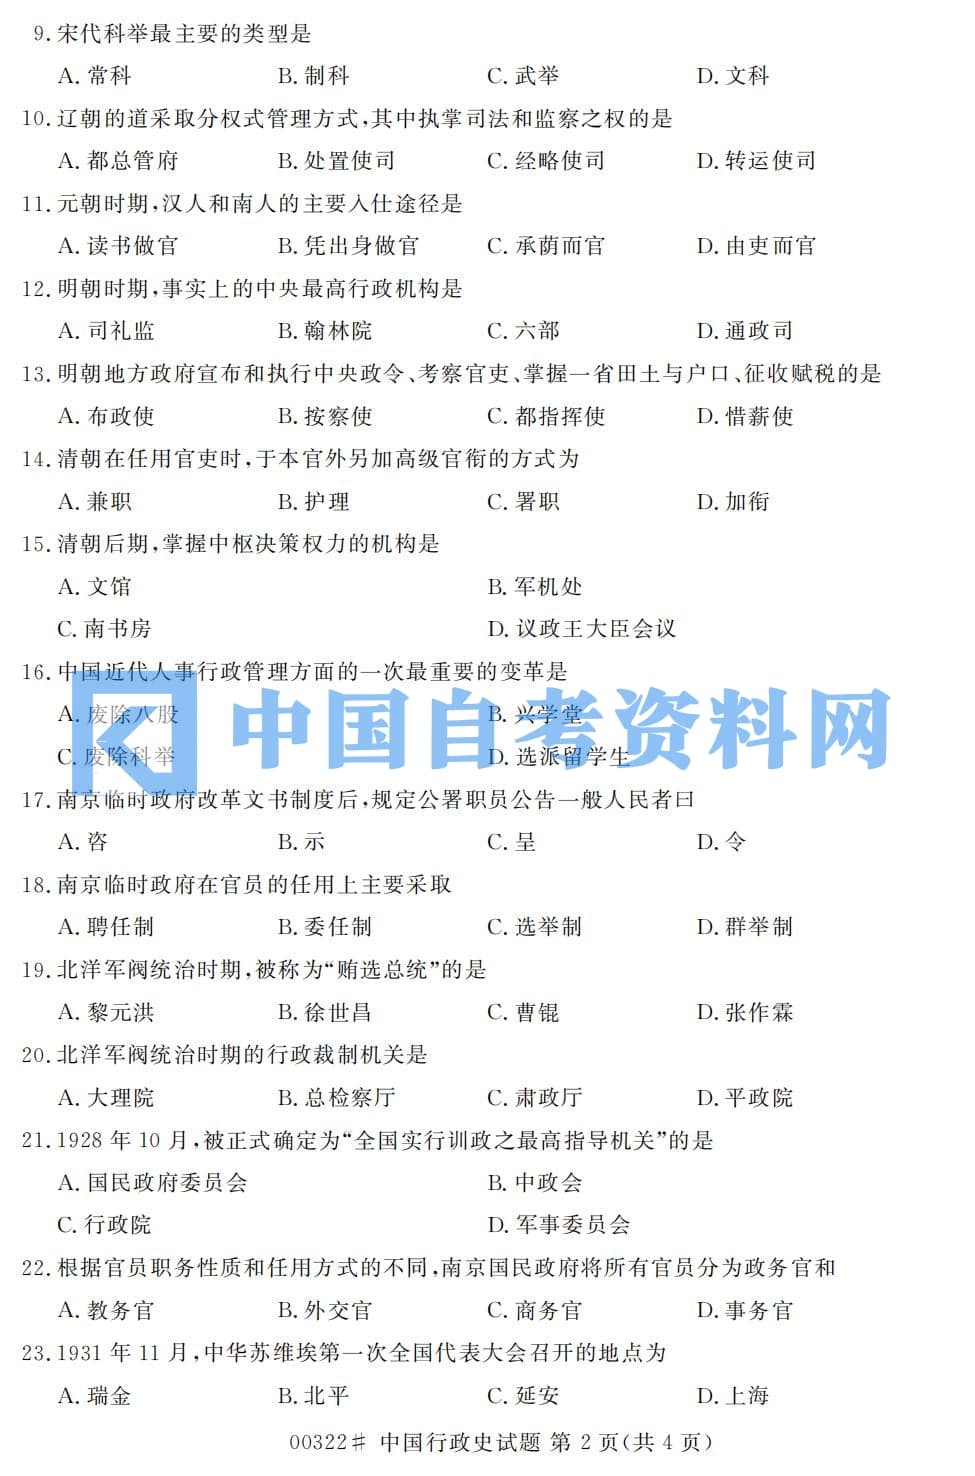 高等教育自学考试中国行政史历年真题及答案打包插图3